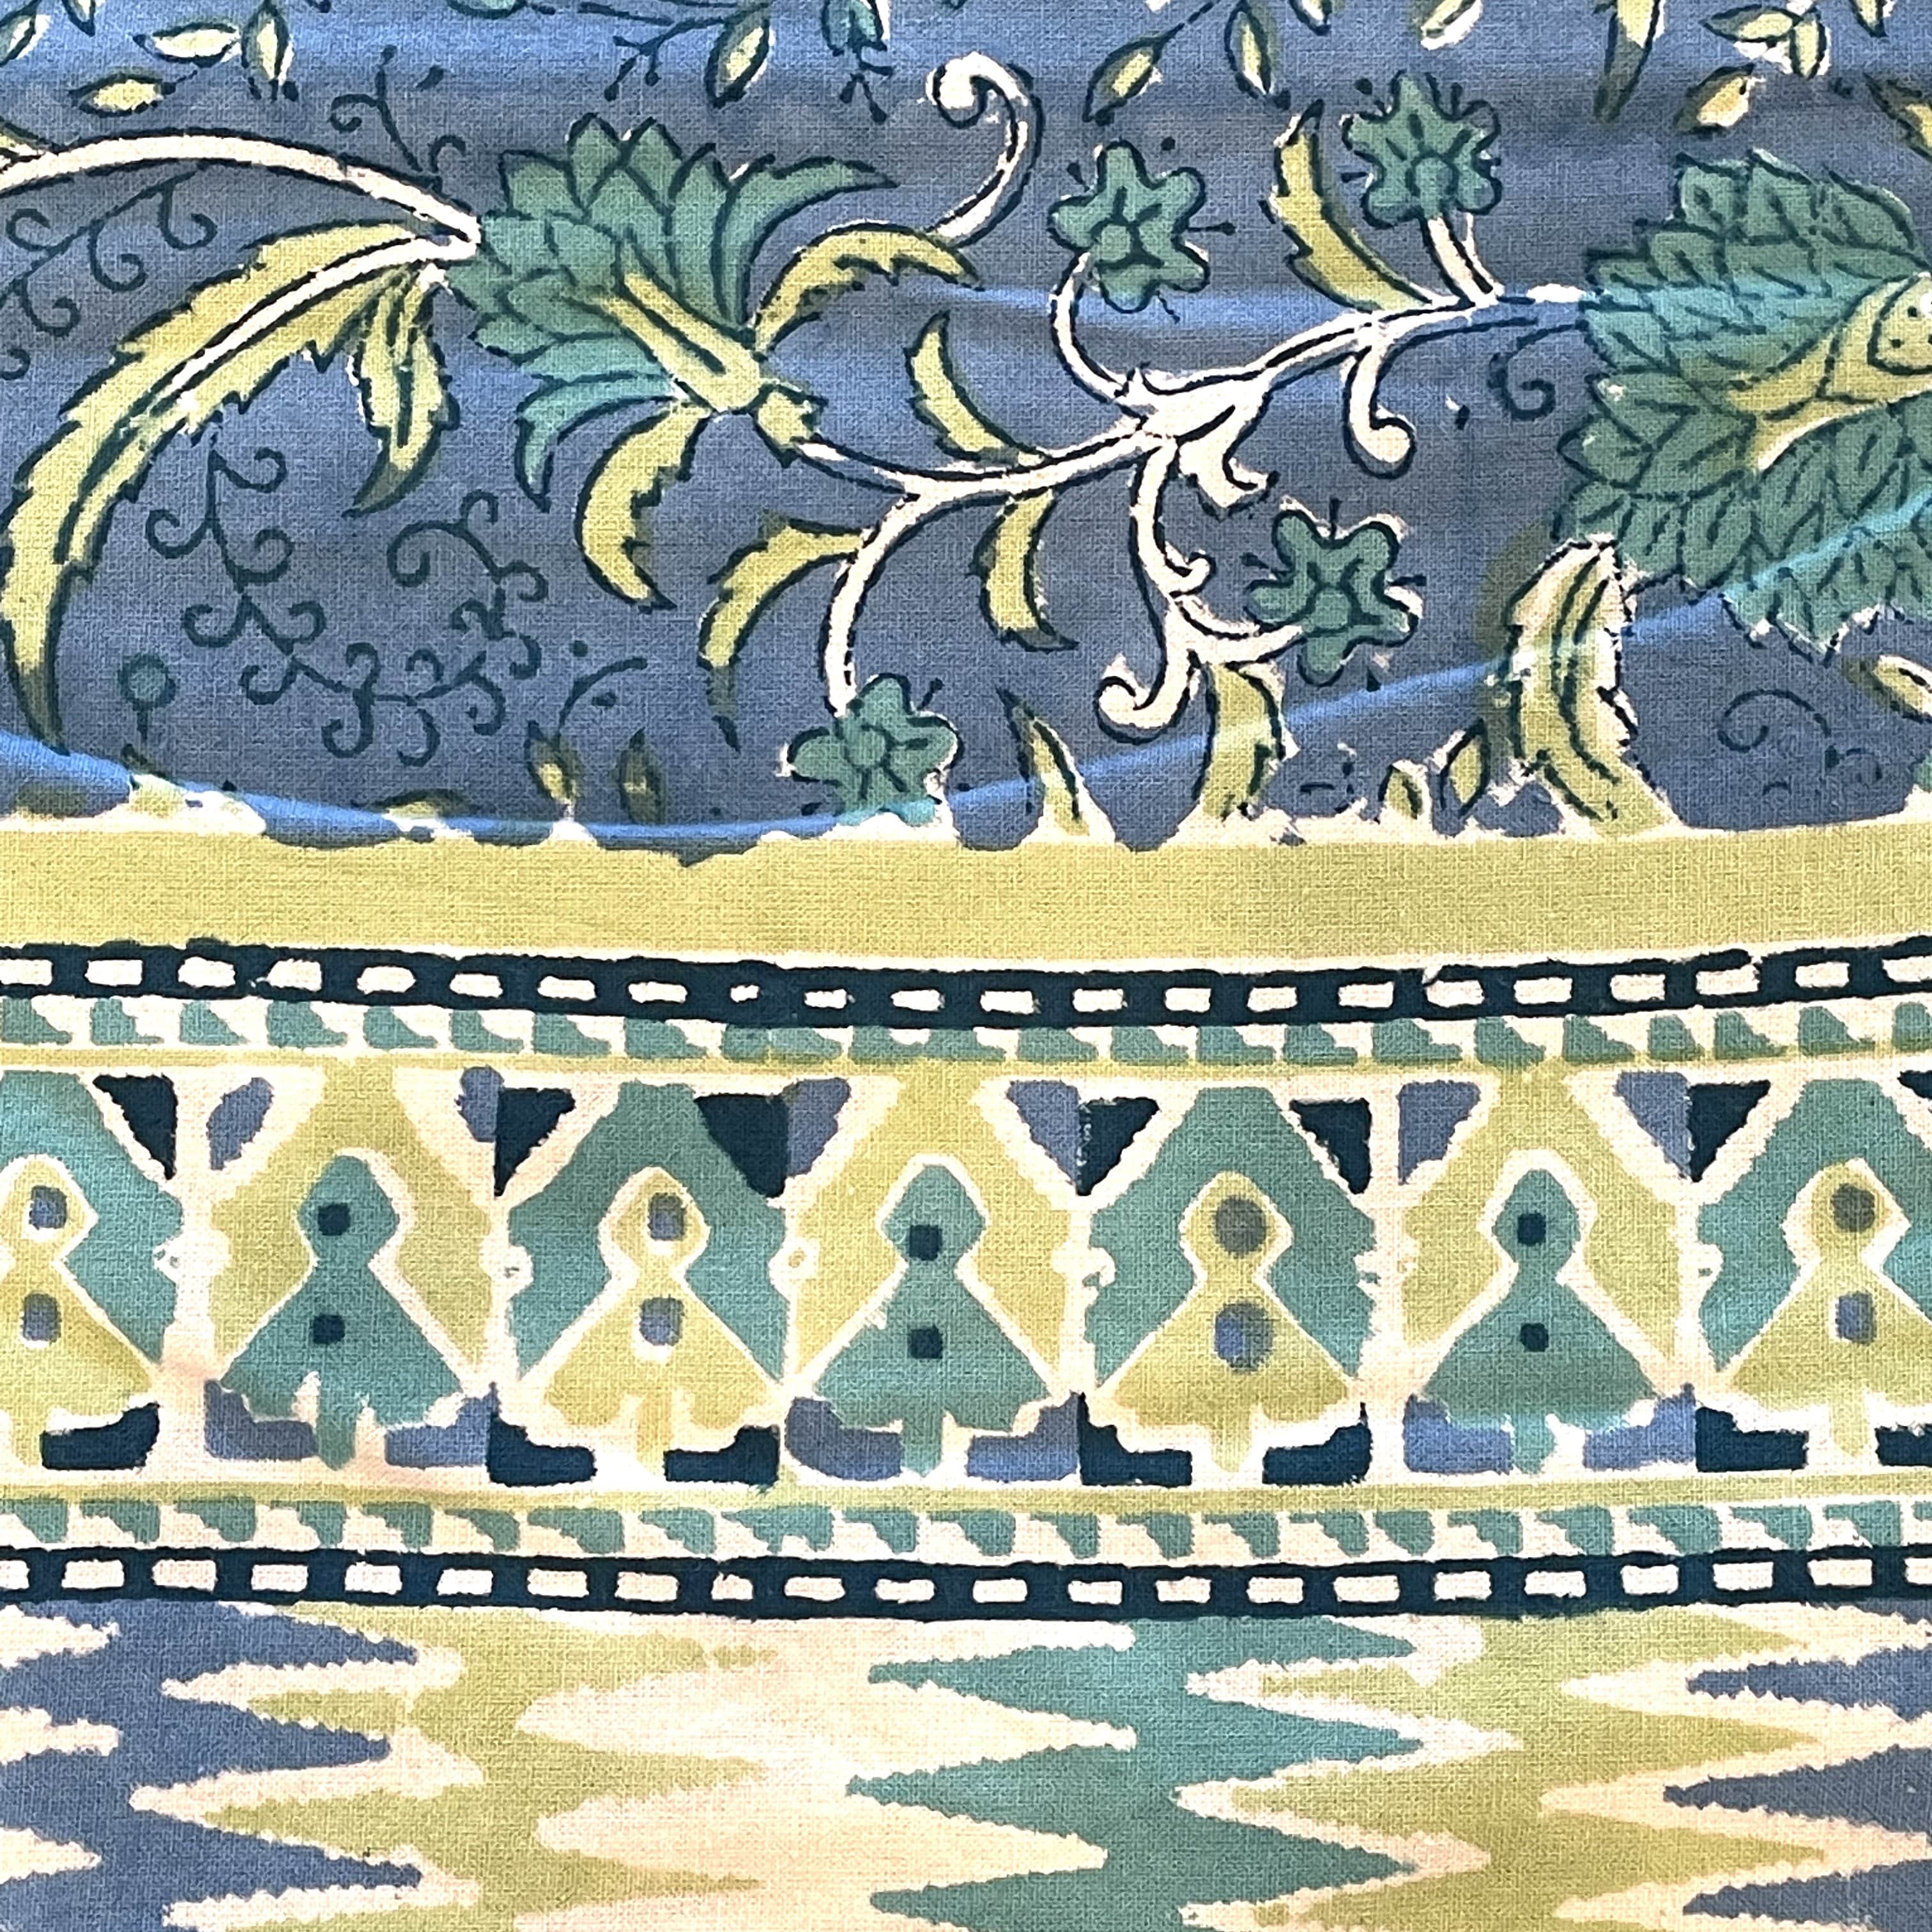 Sulak Blue N.H. Block Print Tablecloth - 60" x 120" - PORCH